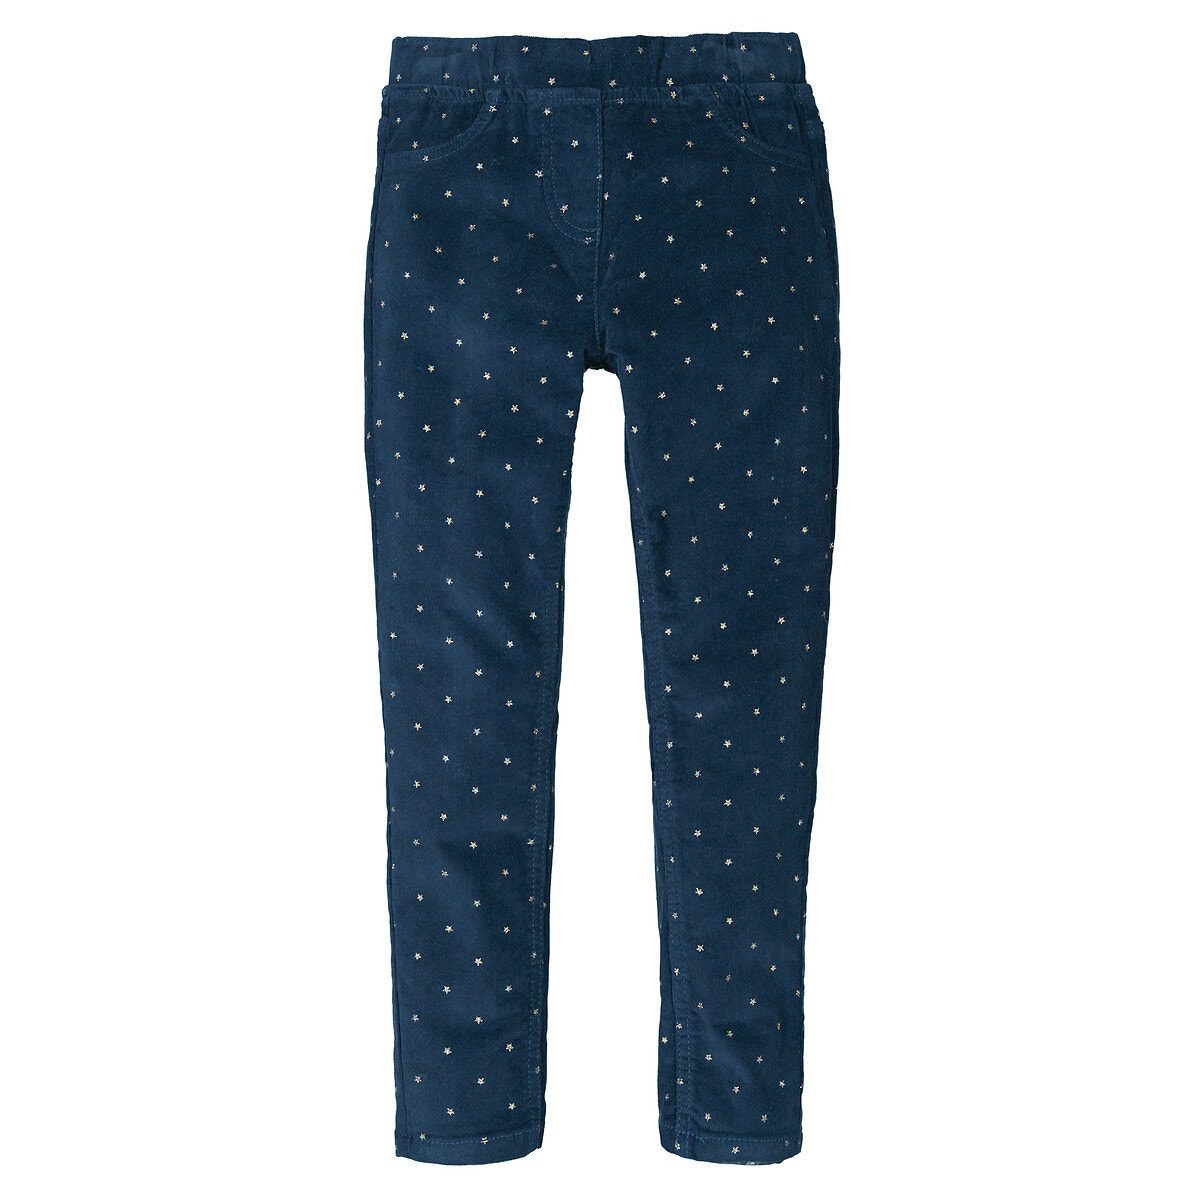 Εμπριμέ παντελόνι με μοτίβο αστέρια από βελούδο Μπλε